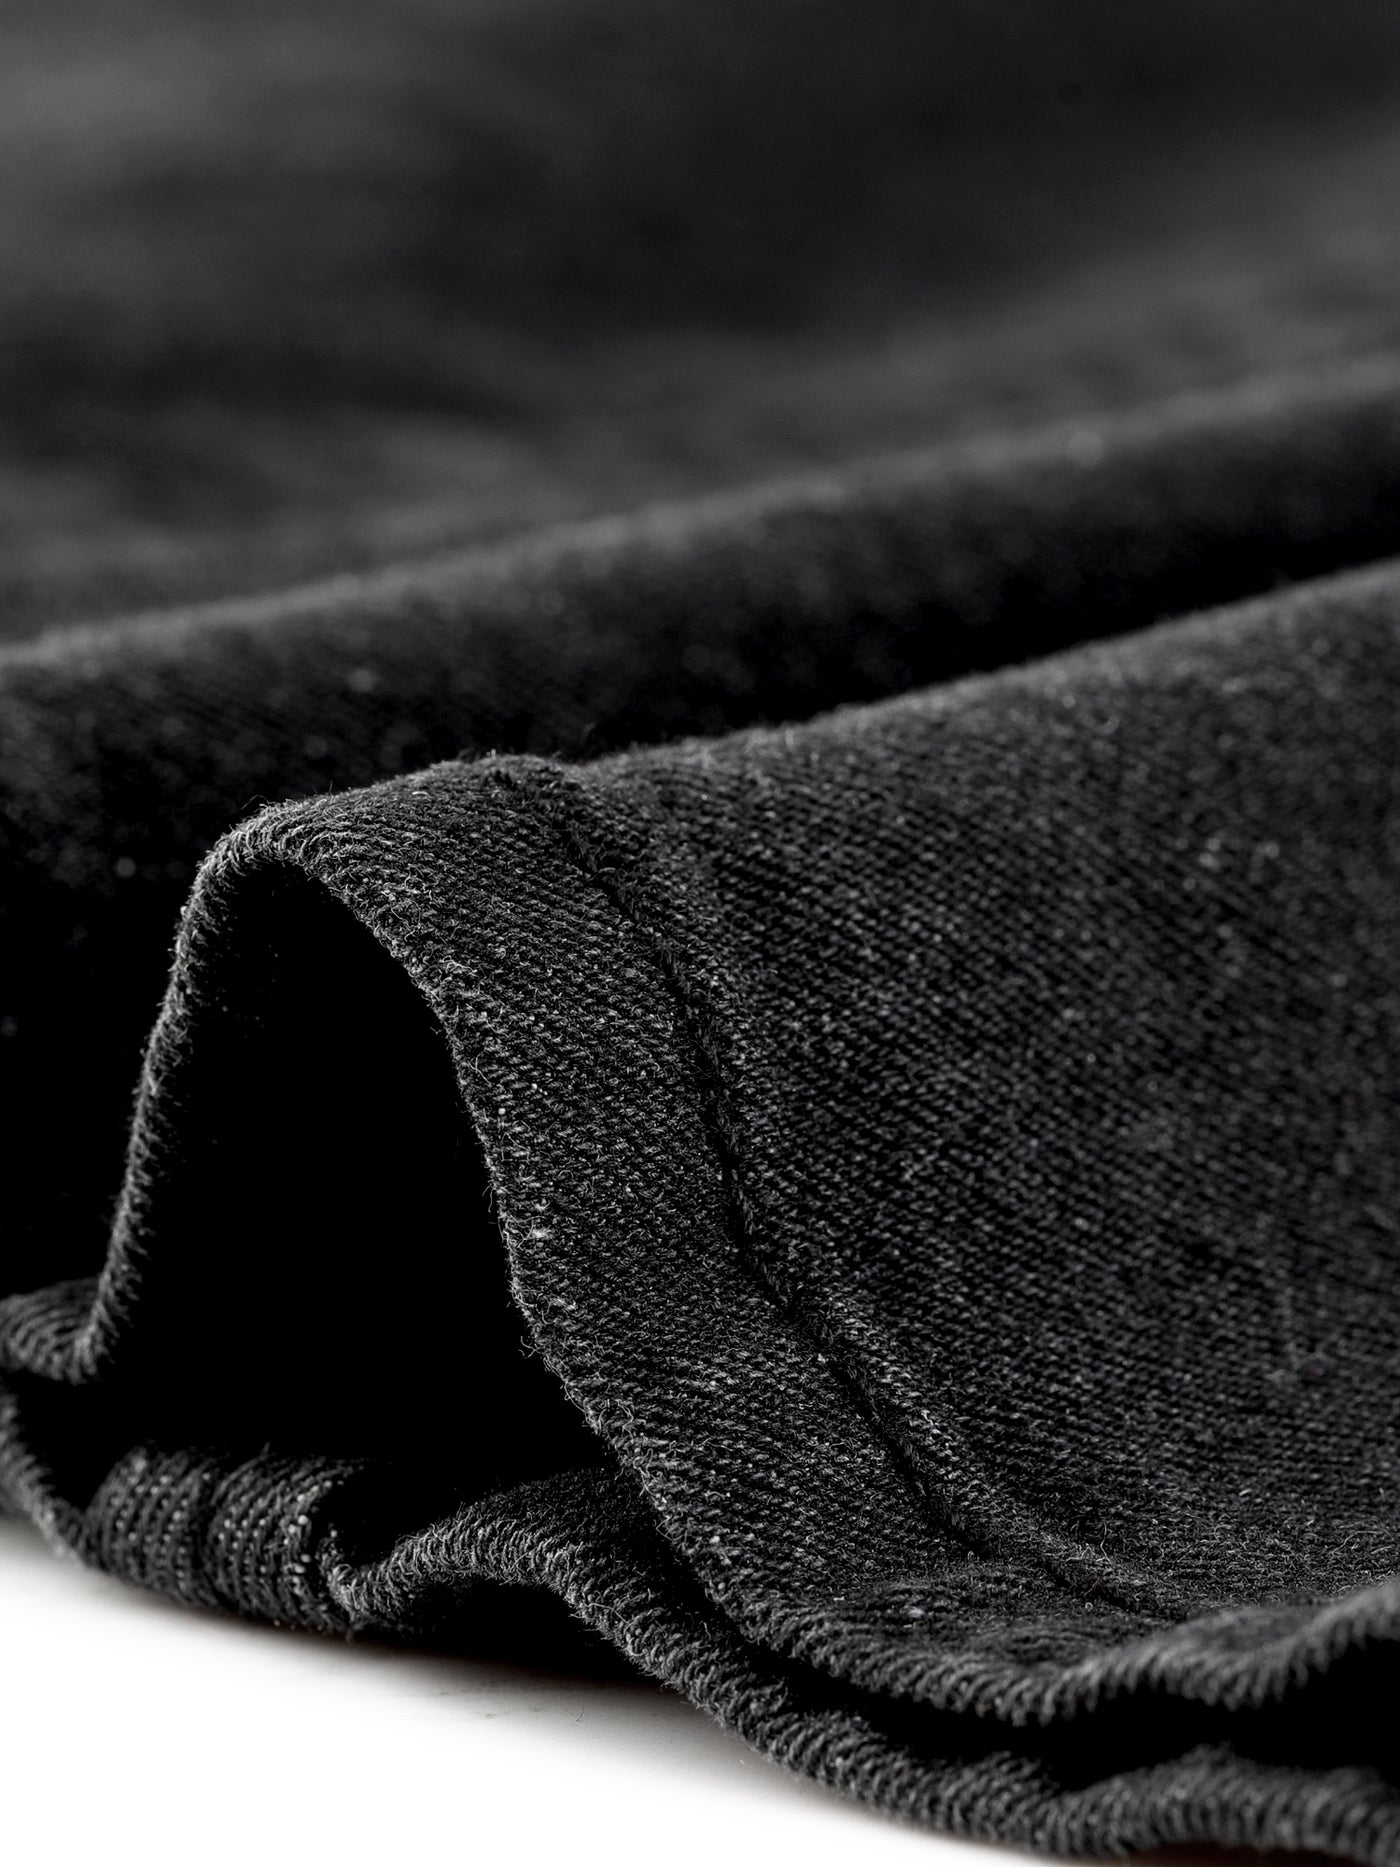 Bublédon Plus Size Jacket Sleeveless Waistline Notched Lapel Button Denim Vests